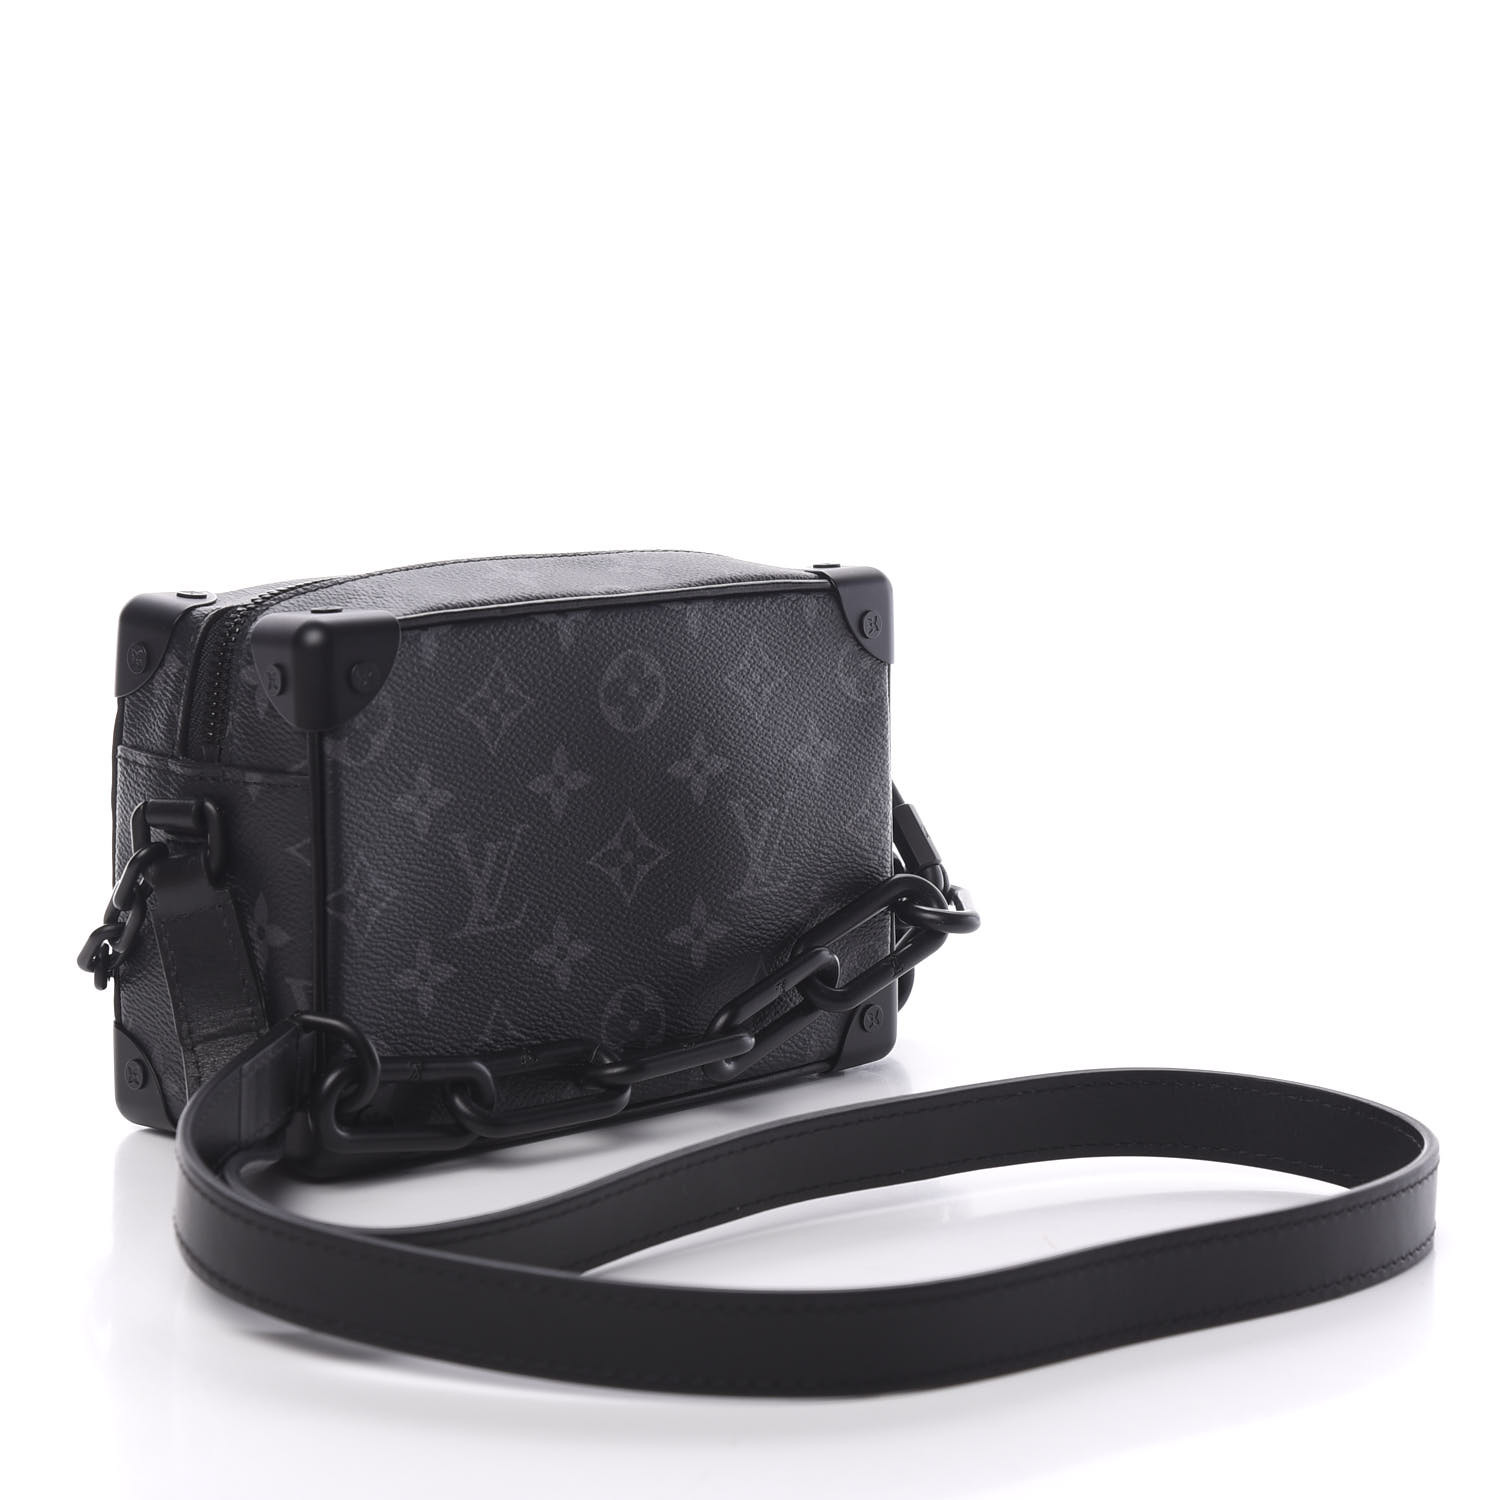 Túi Louis Vuitton mini là gì? Vì sao nên mua túi LV mini?